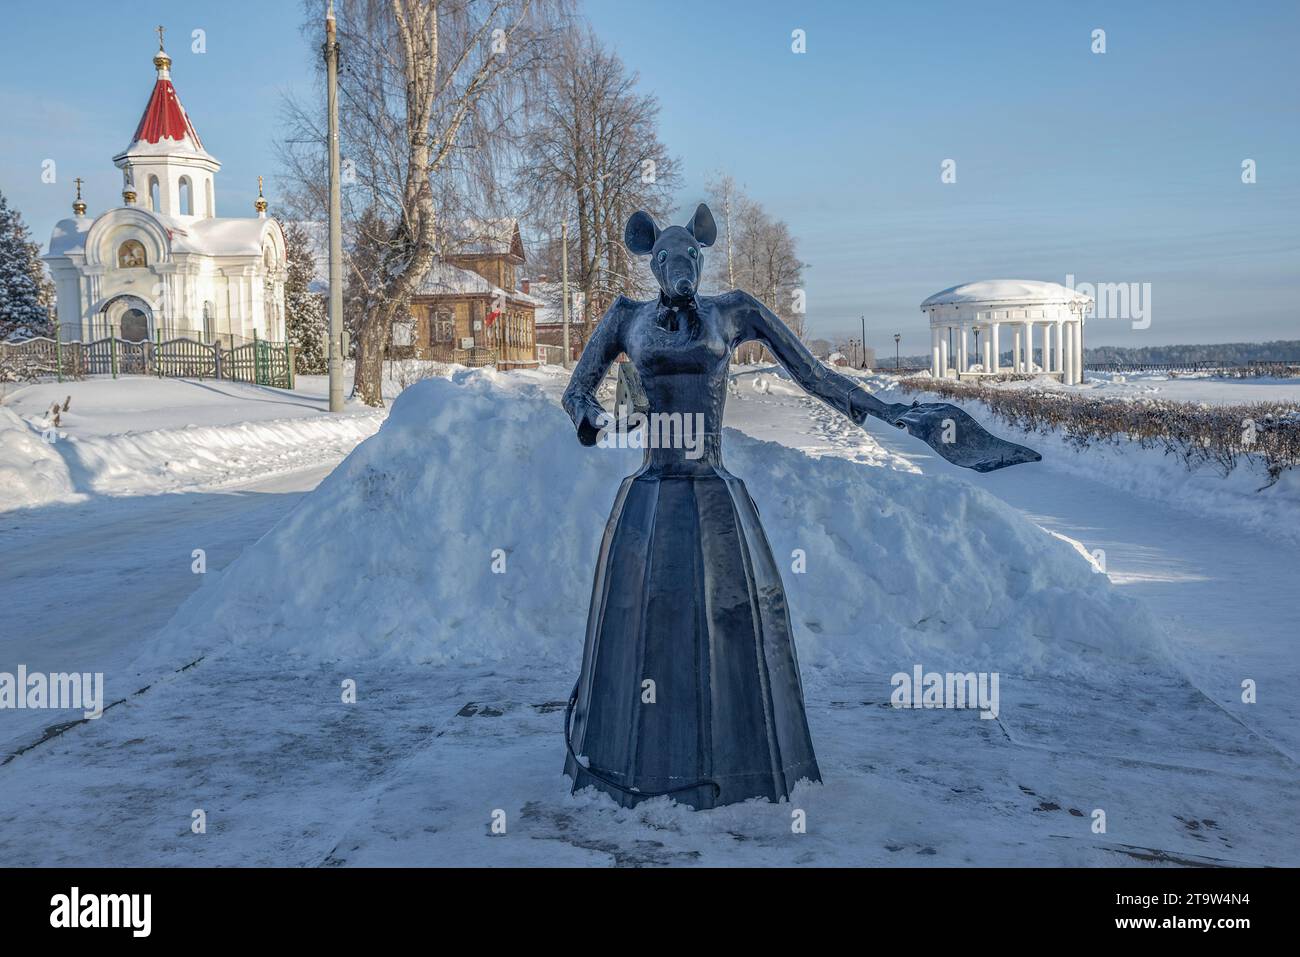 MYSCHKIN, RUSSLAND - 07. JANUAR 2023: Skulptur einer Maus, das Symbol der Stadt Myschkin. Region Jaroslawl, Russland Stockfoto